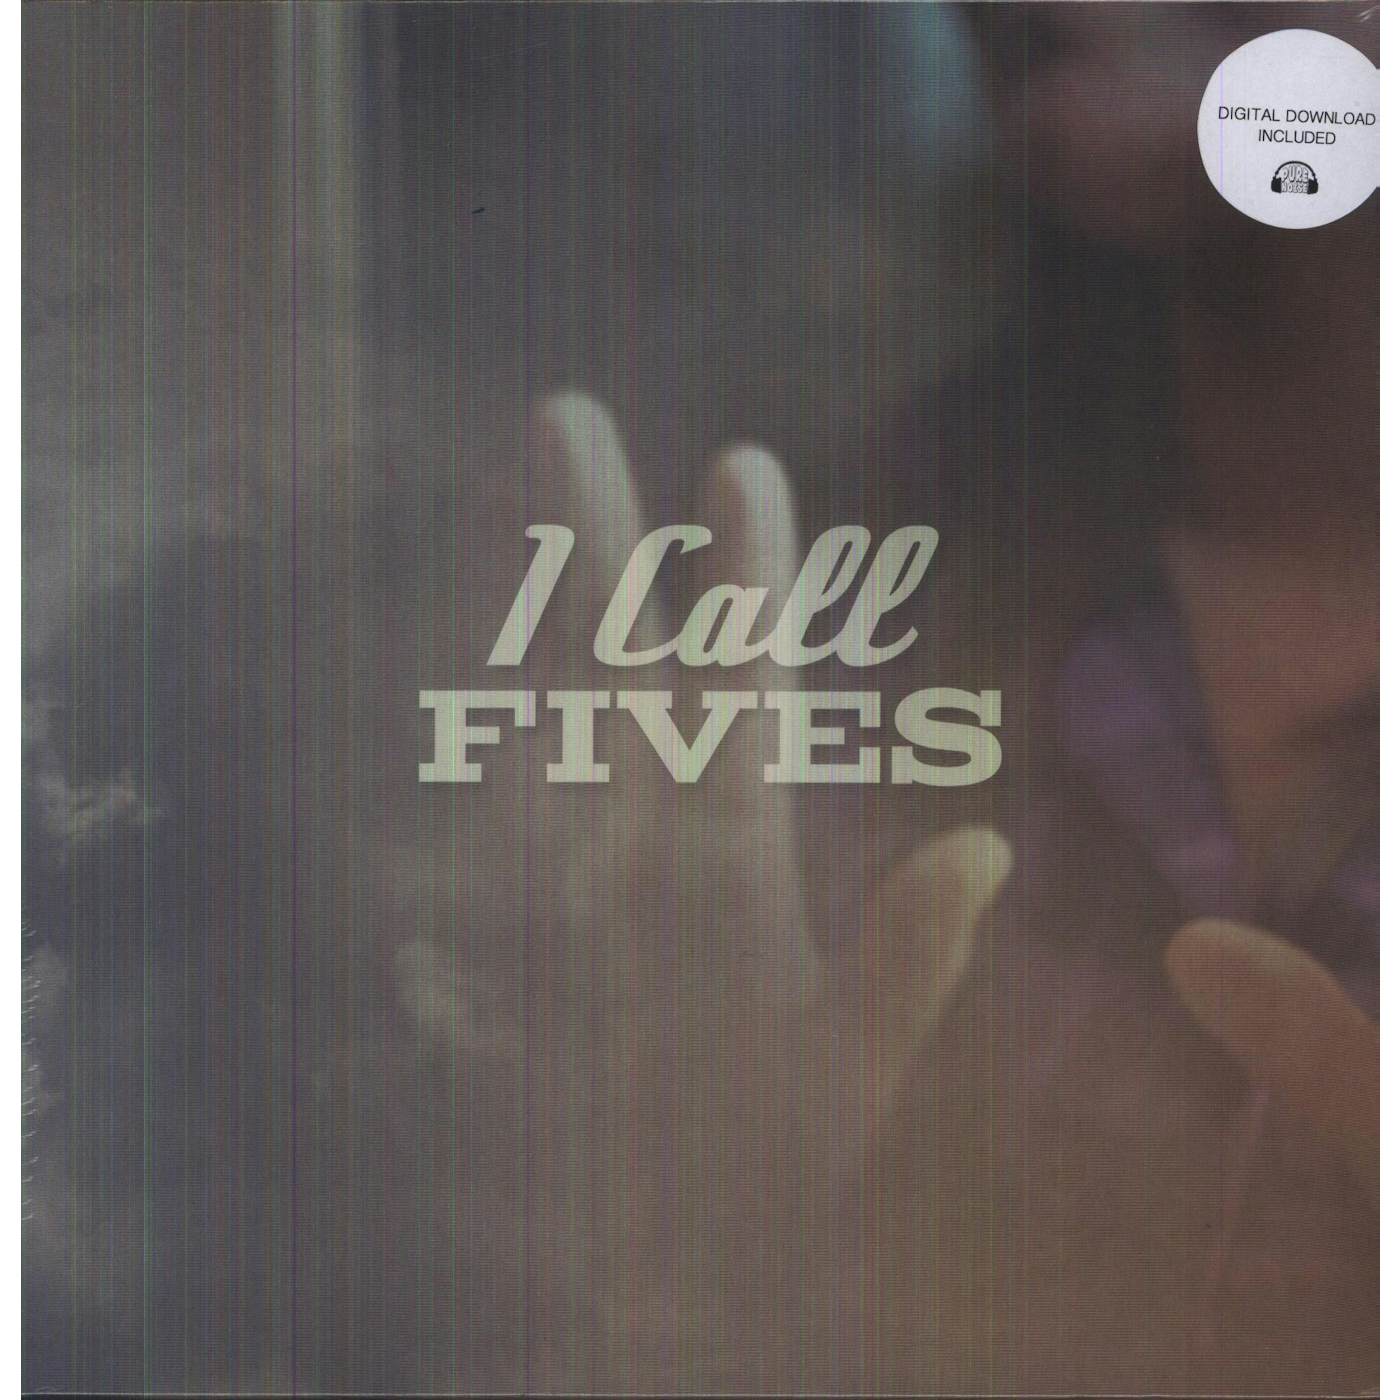 I Call Fives Vinyl Record